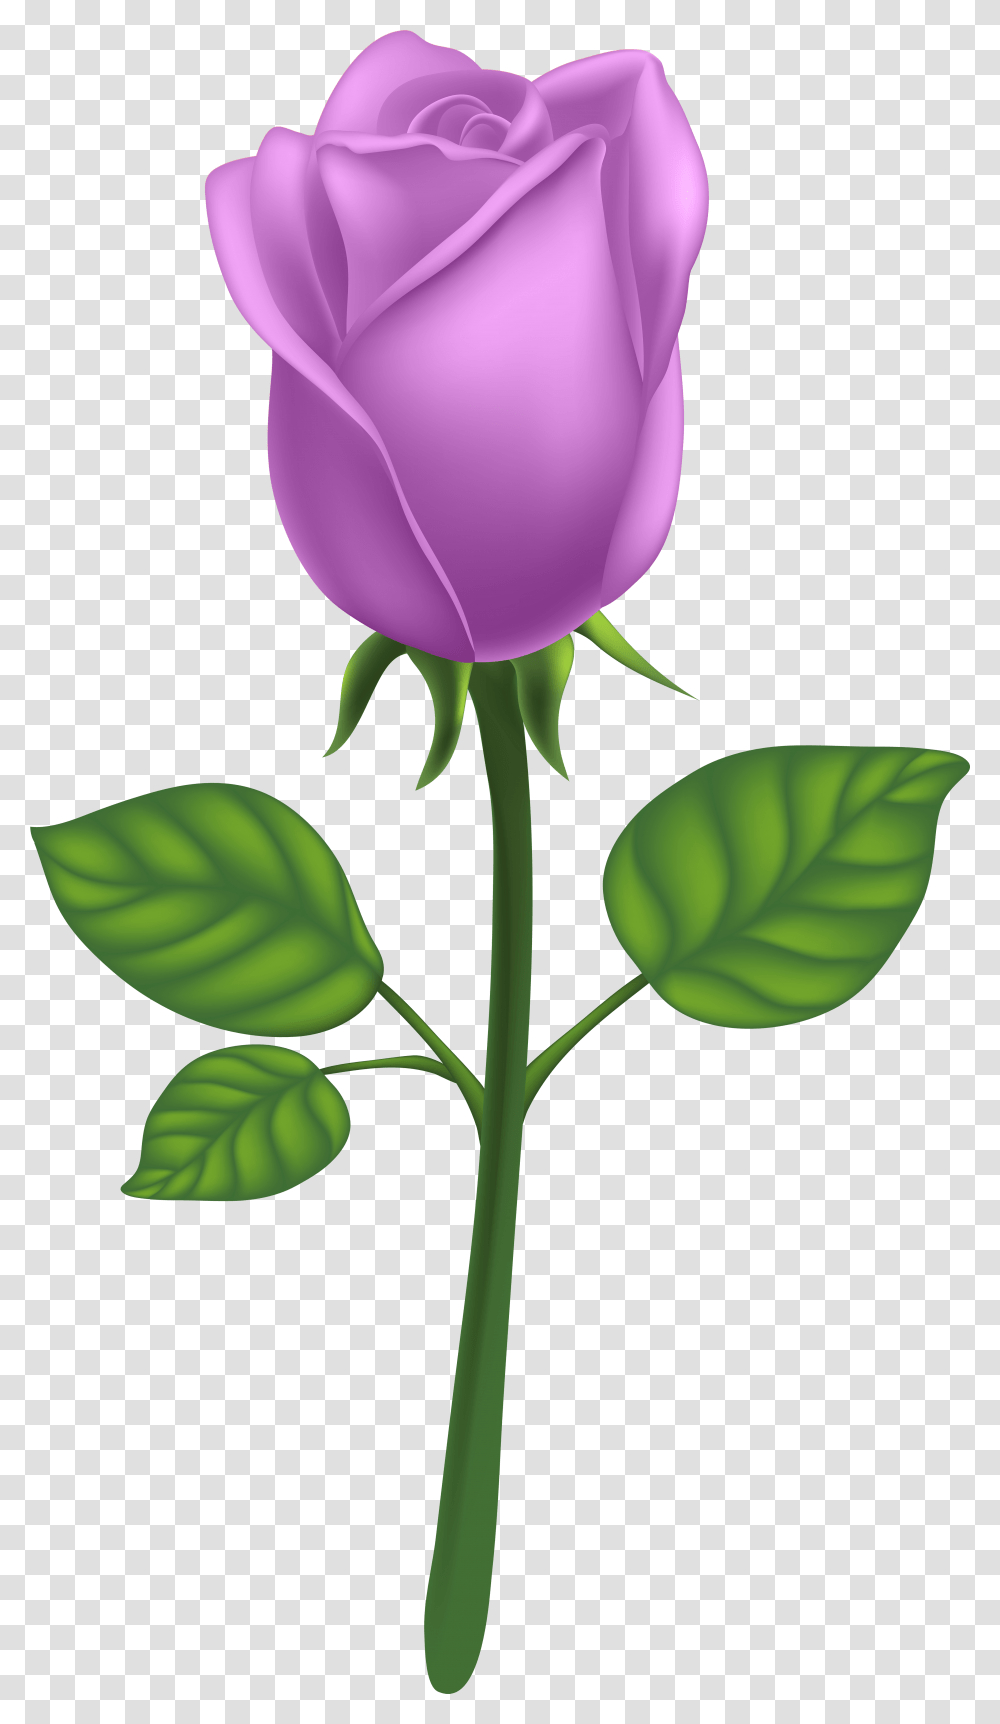 Purple Long Stem Rose Clipart Background Pink Rose, Flower, Plant, Blossom, Petal Transparent Png